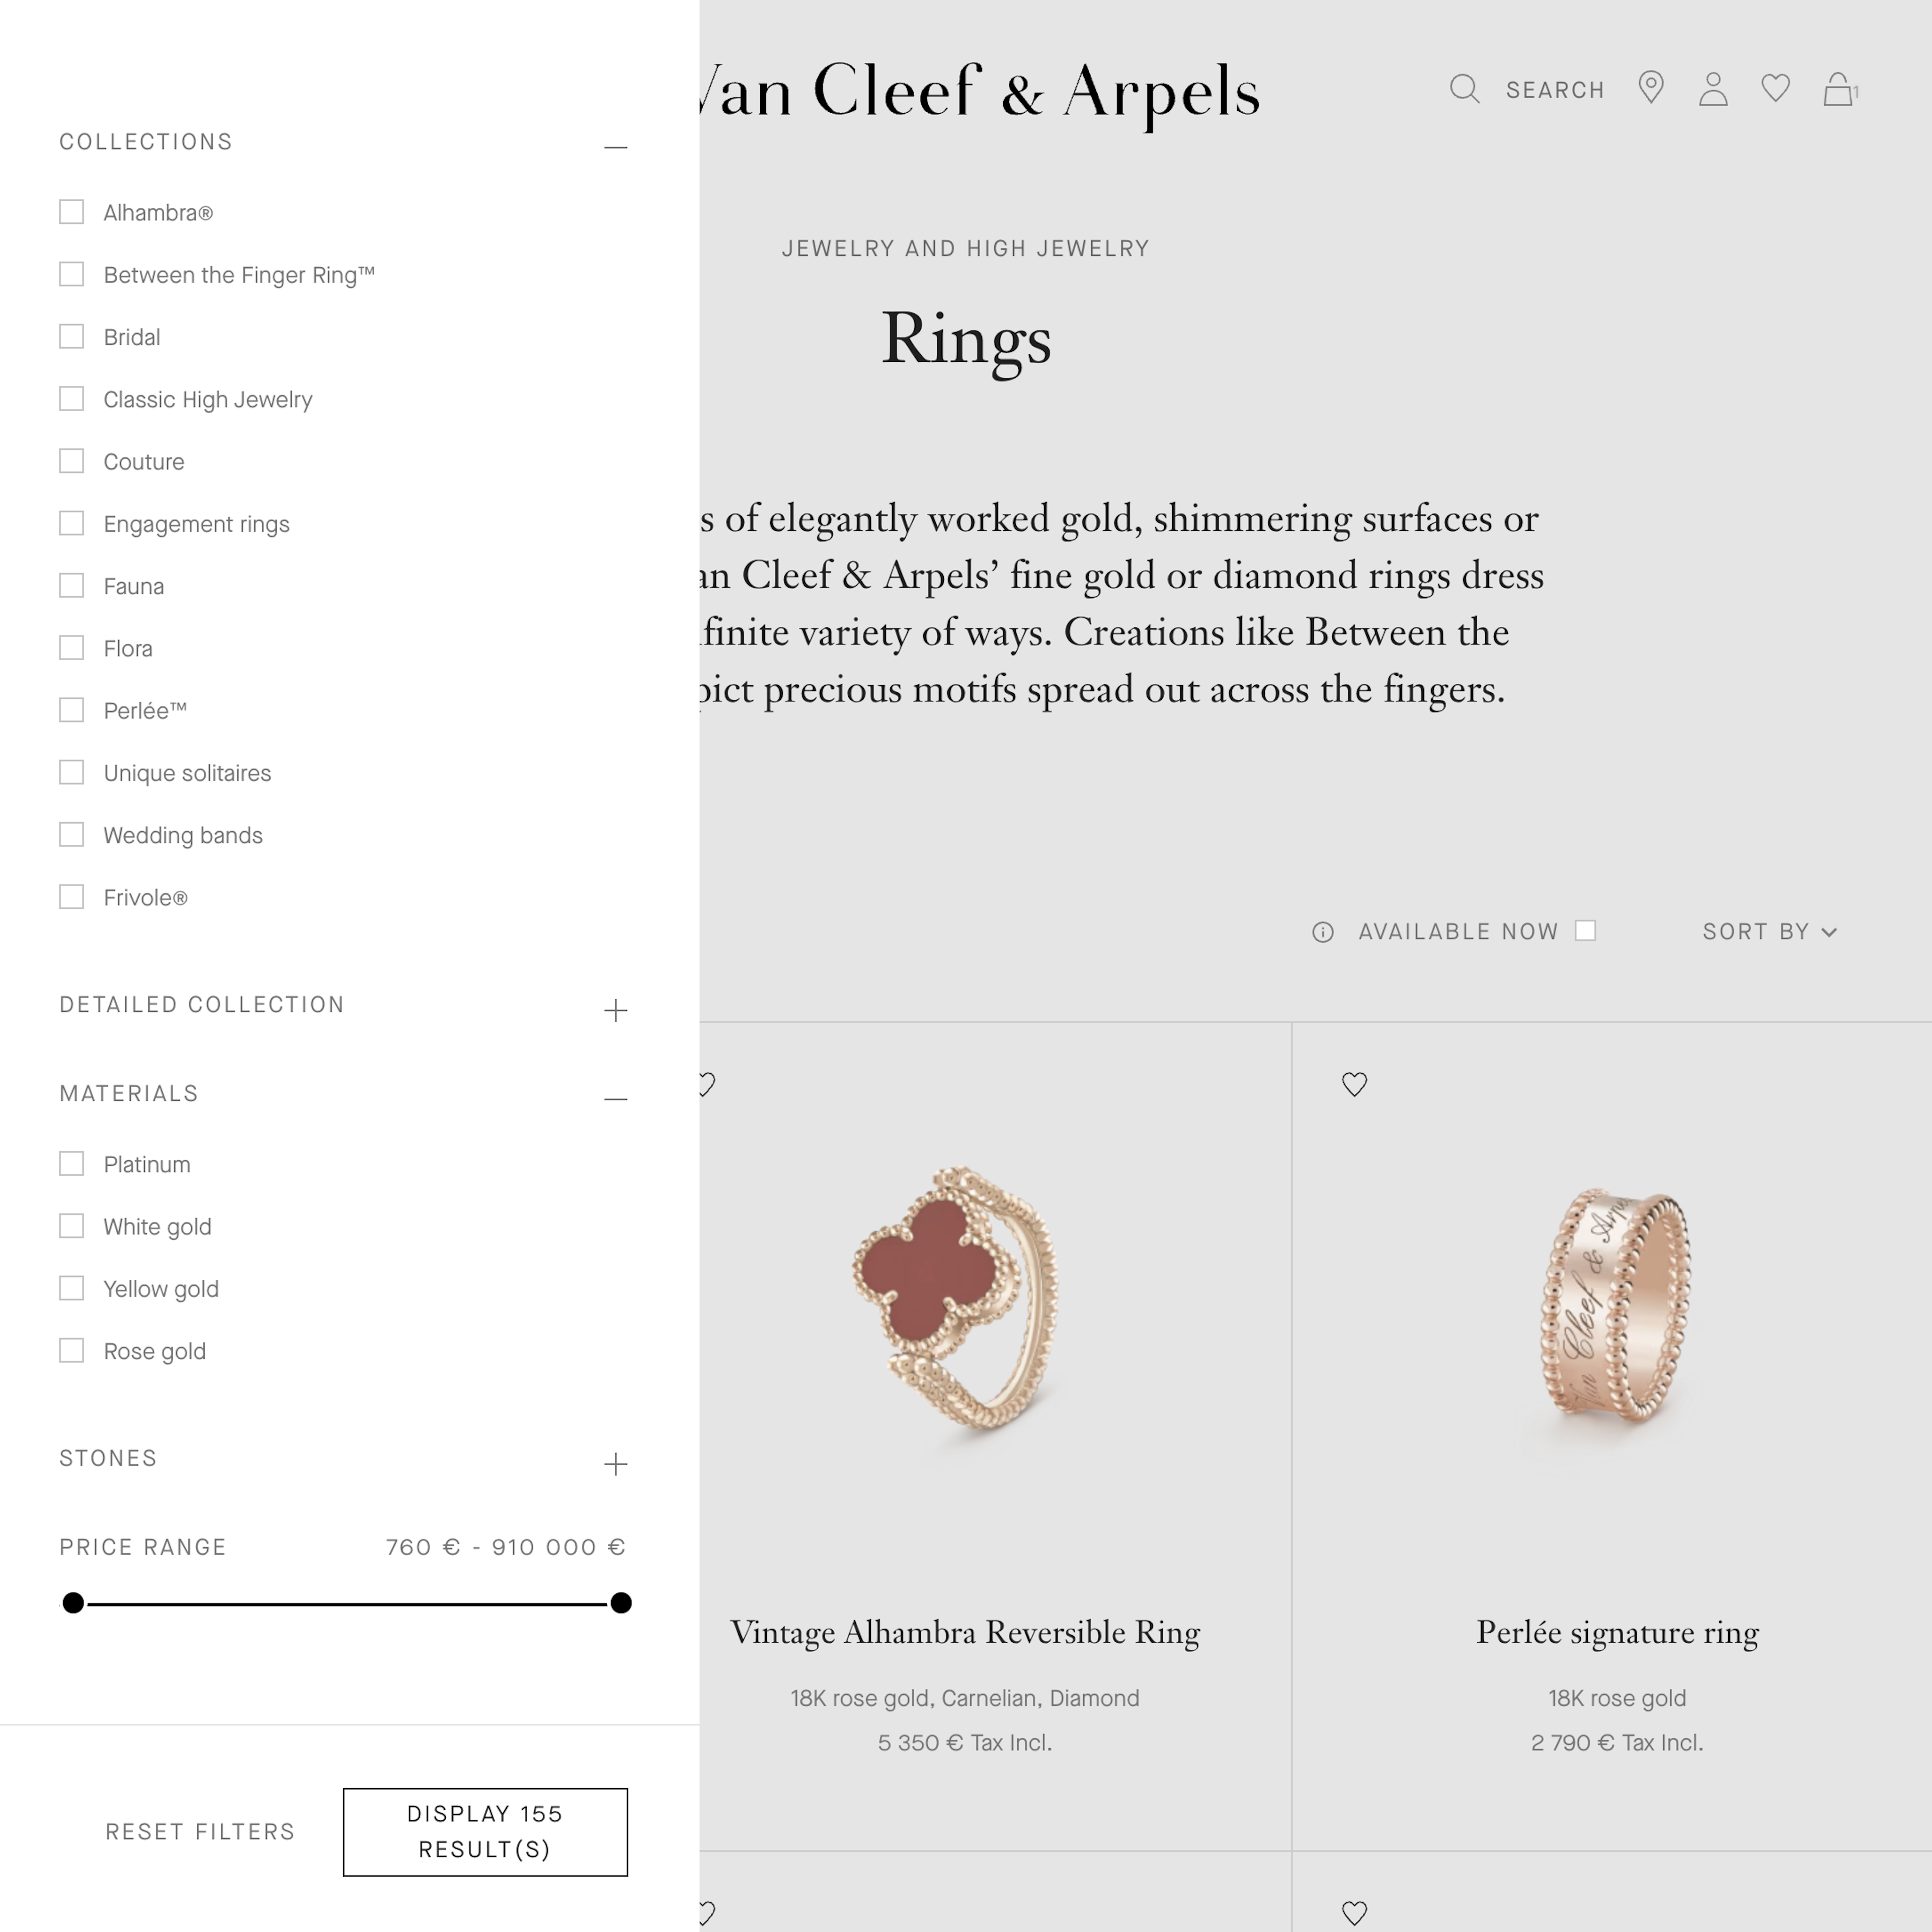 Desktop screenshot of Van Cleef & Arpels